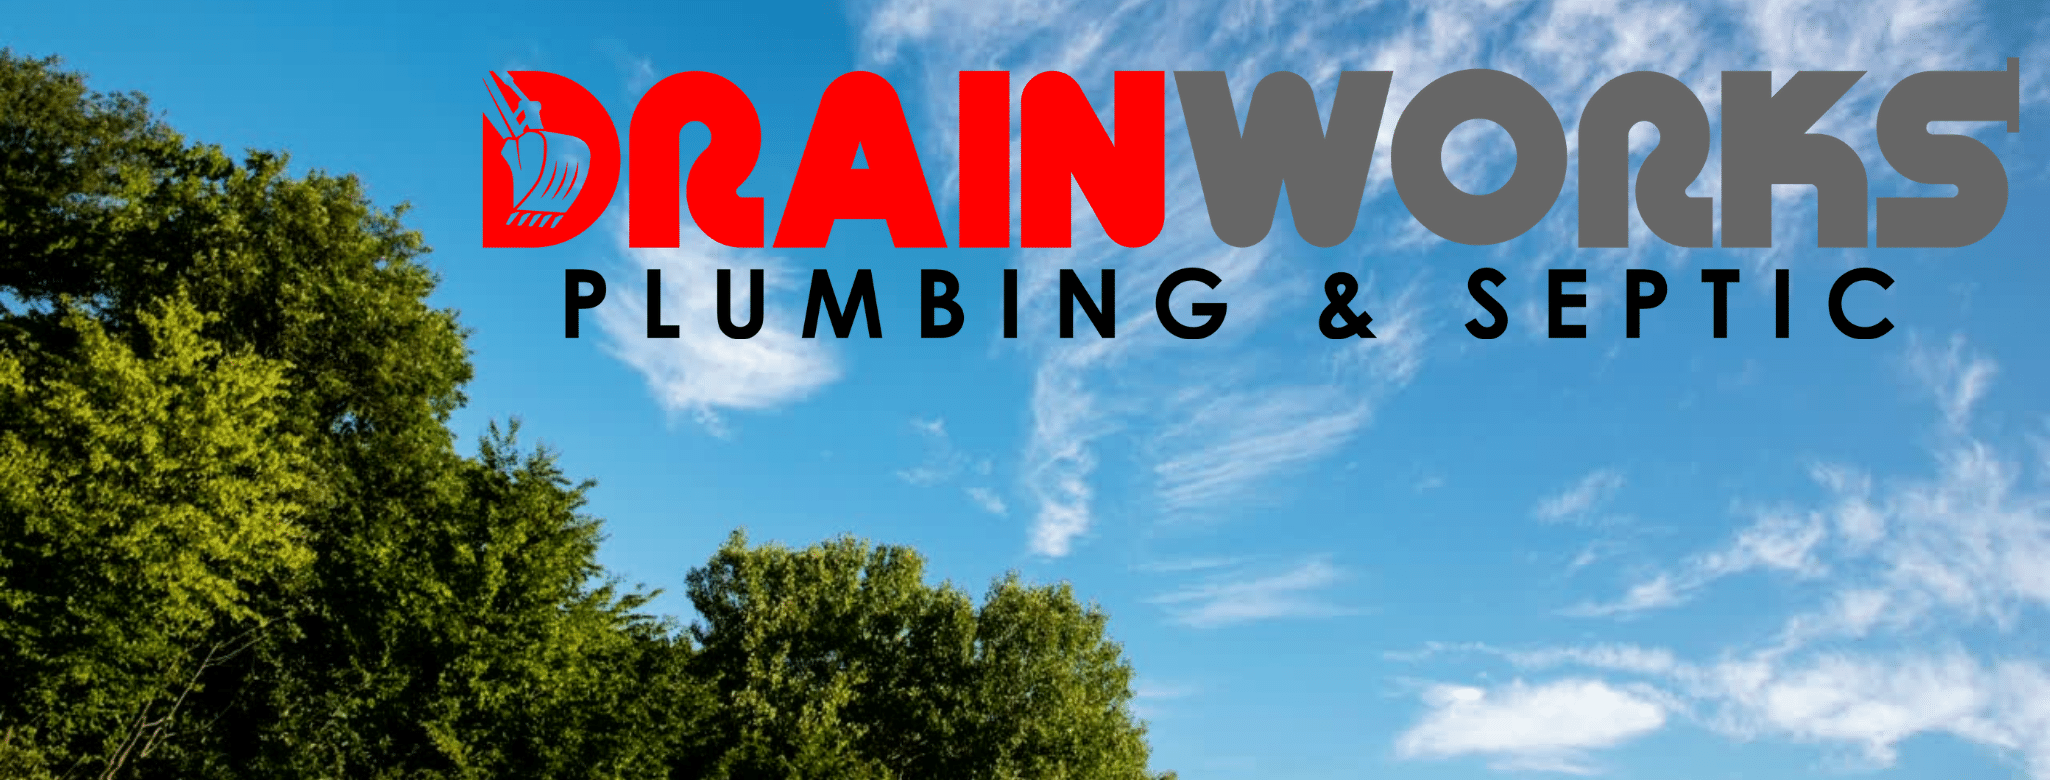 Drainworks Plumbing & Septic, LLC